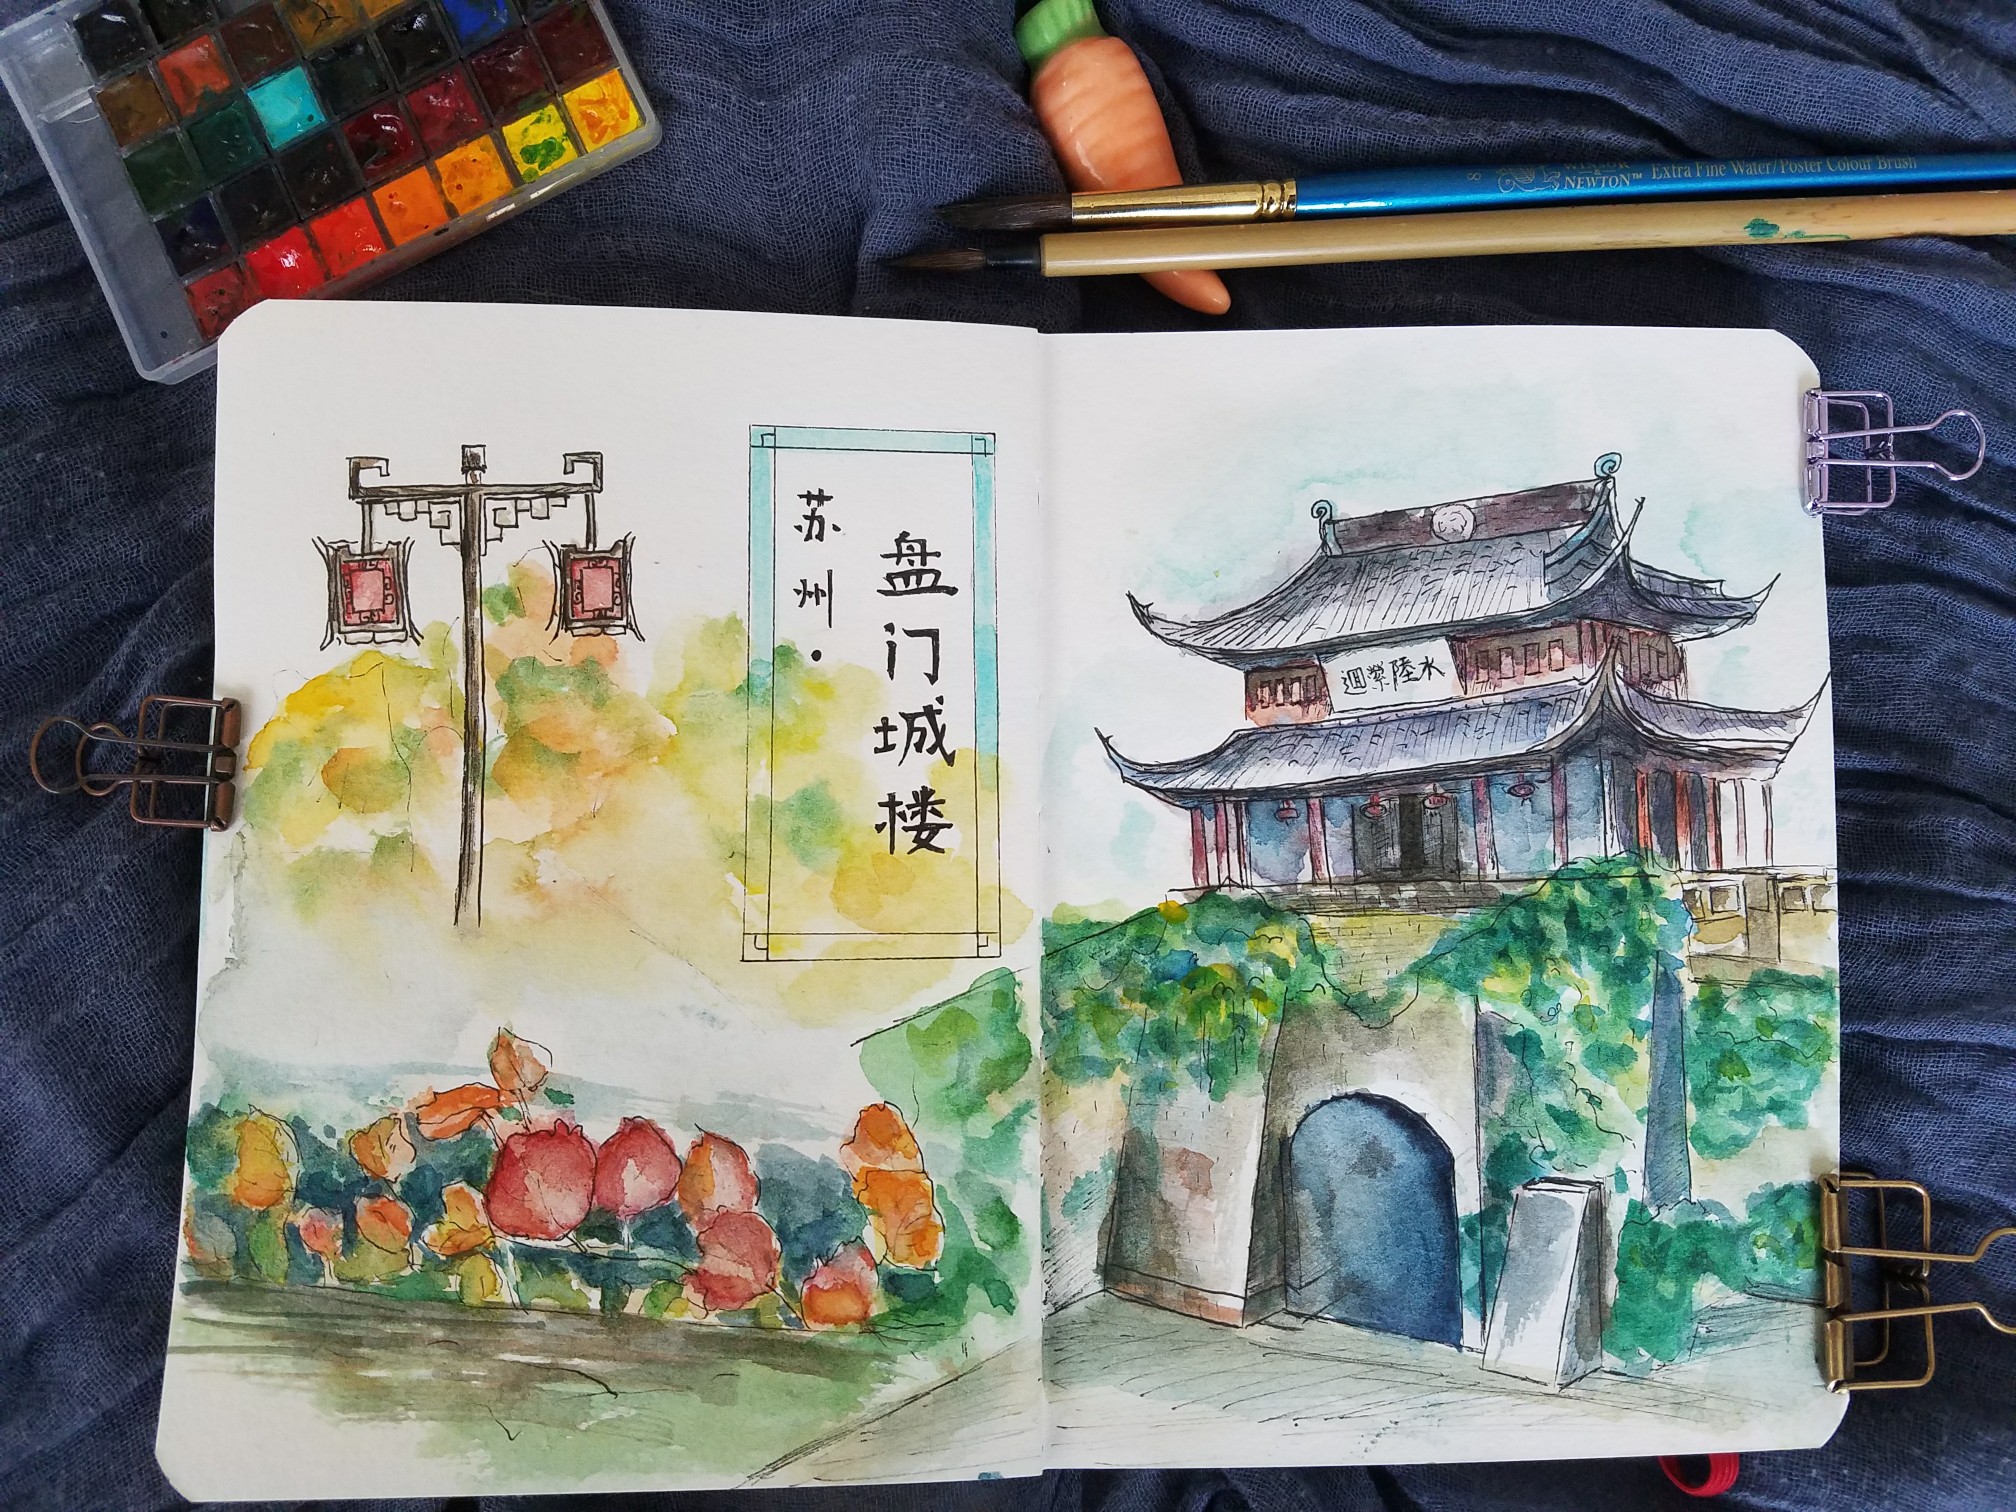 旅行手绘:苏州盘门城楼